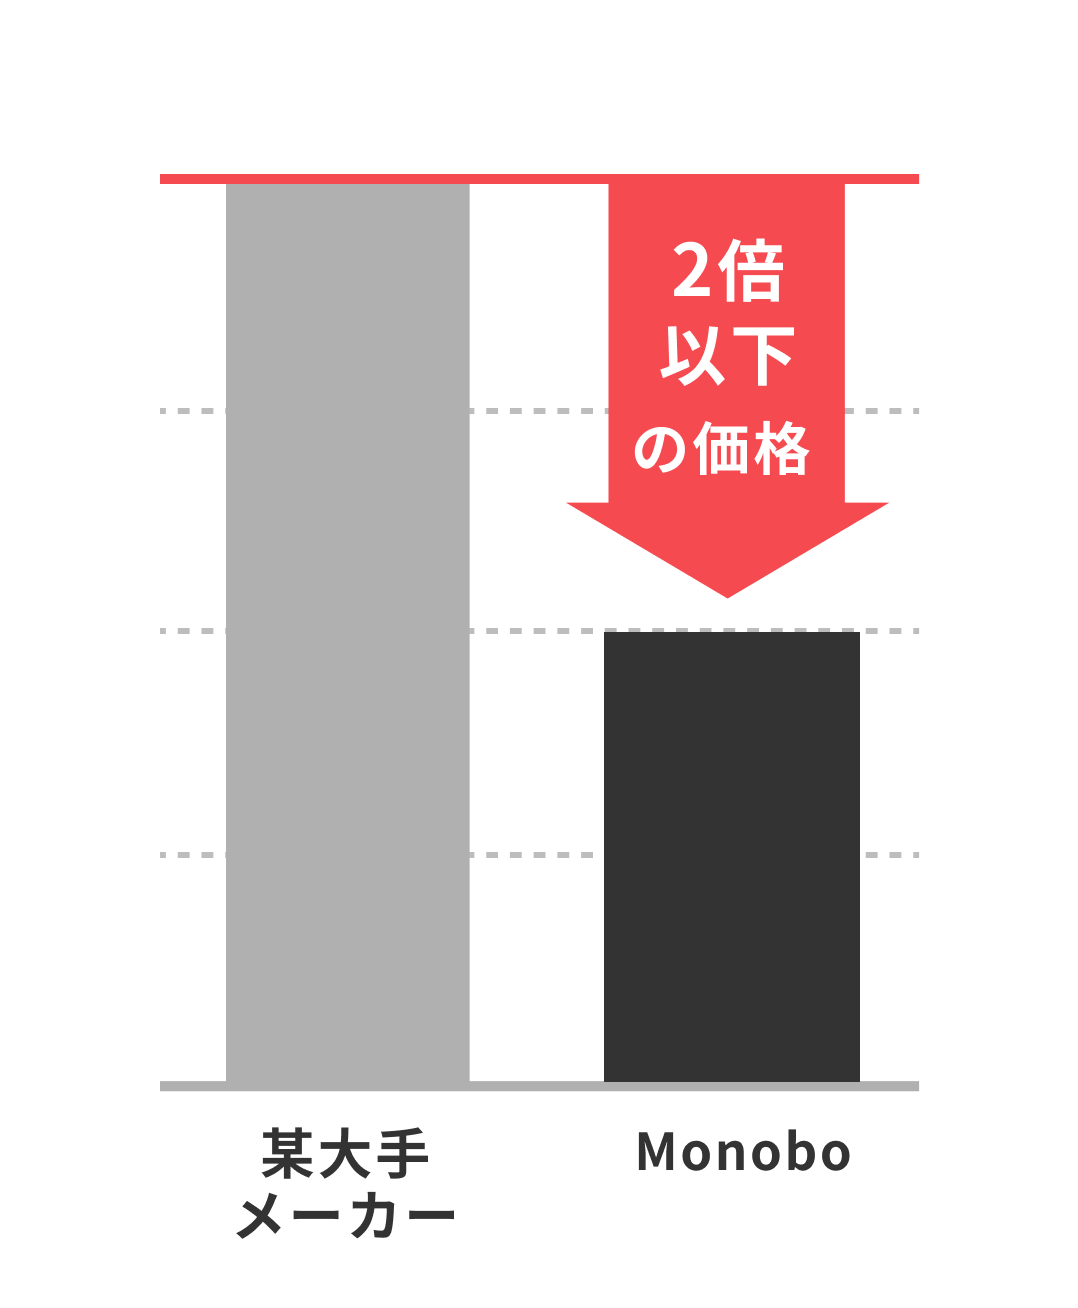 某大手メーカーとの比較グラフ、Monoboは2倍以下の価格